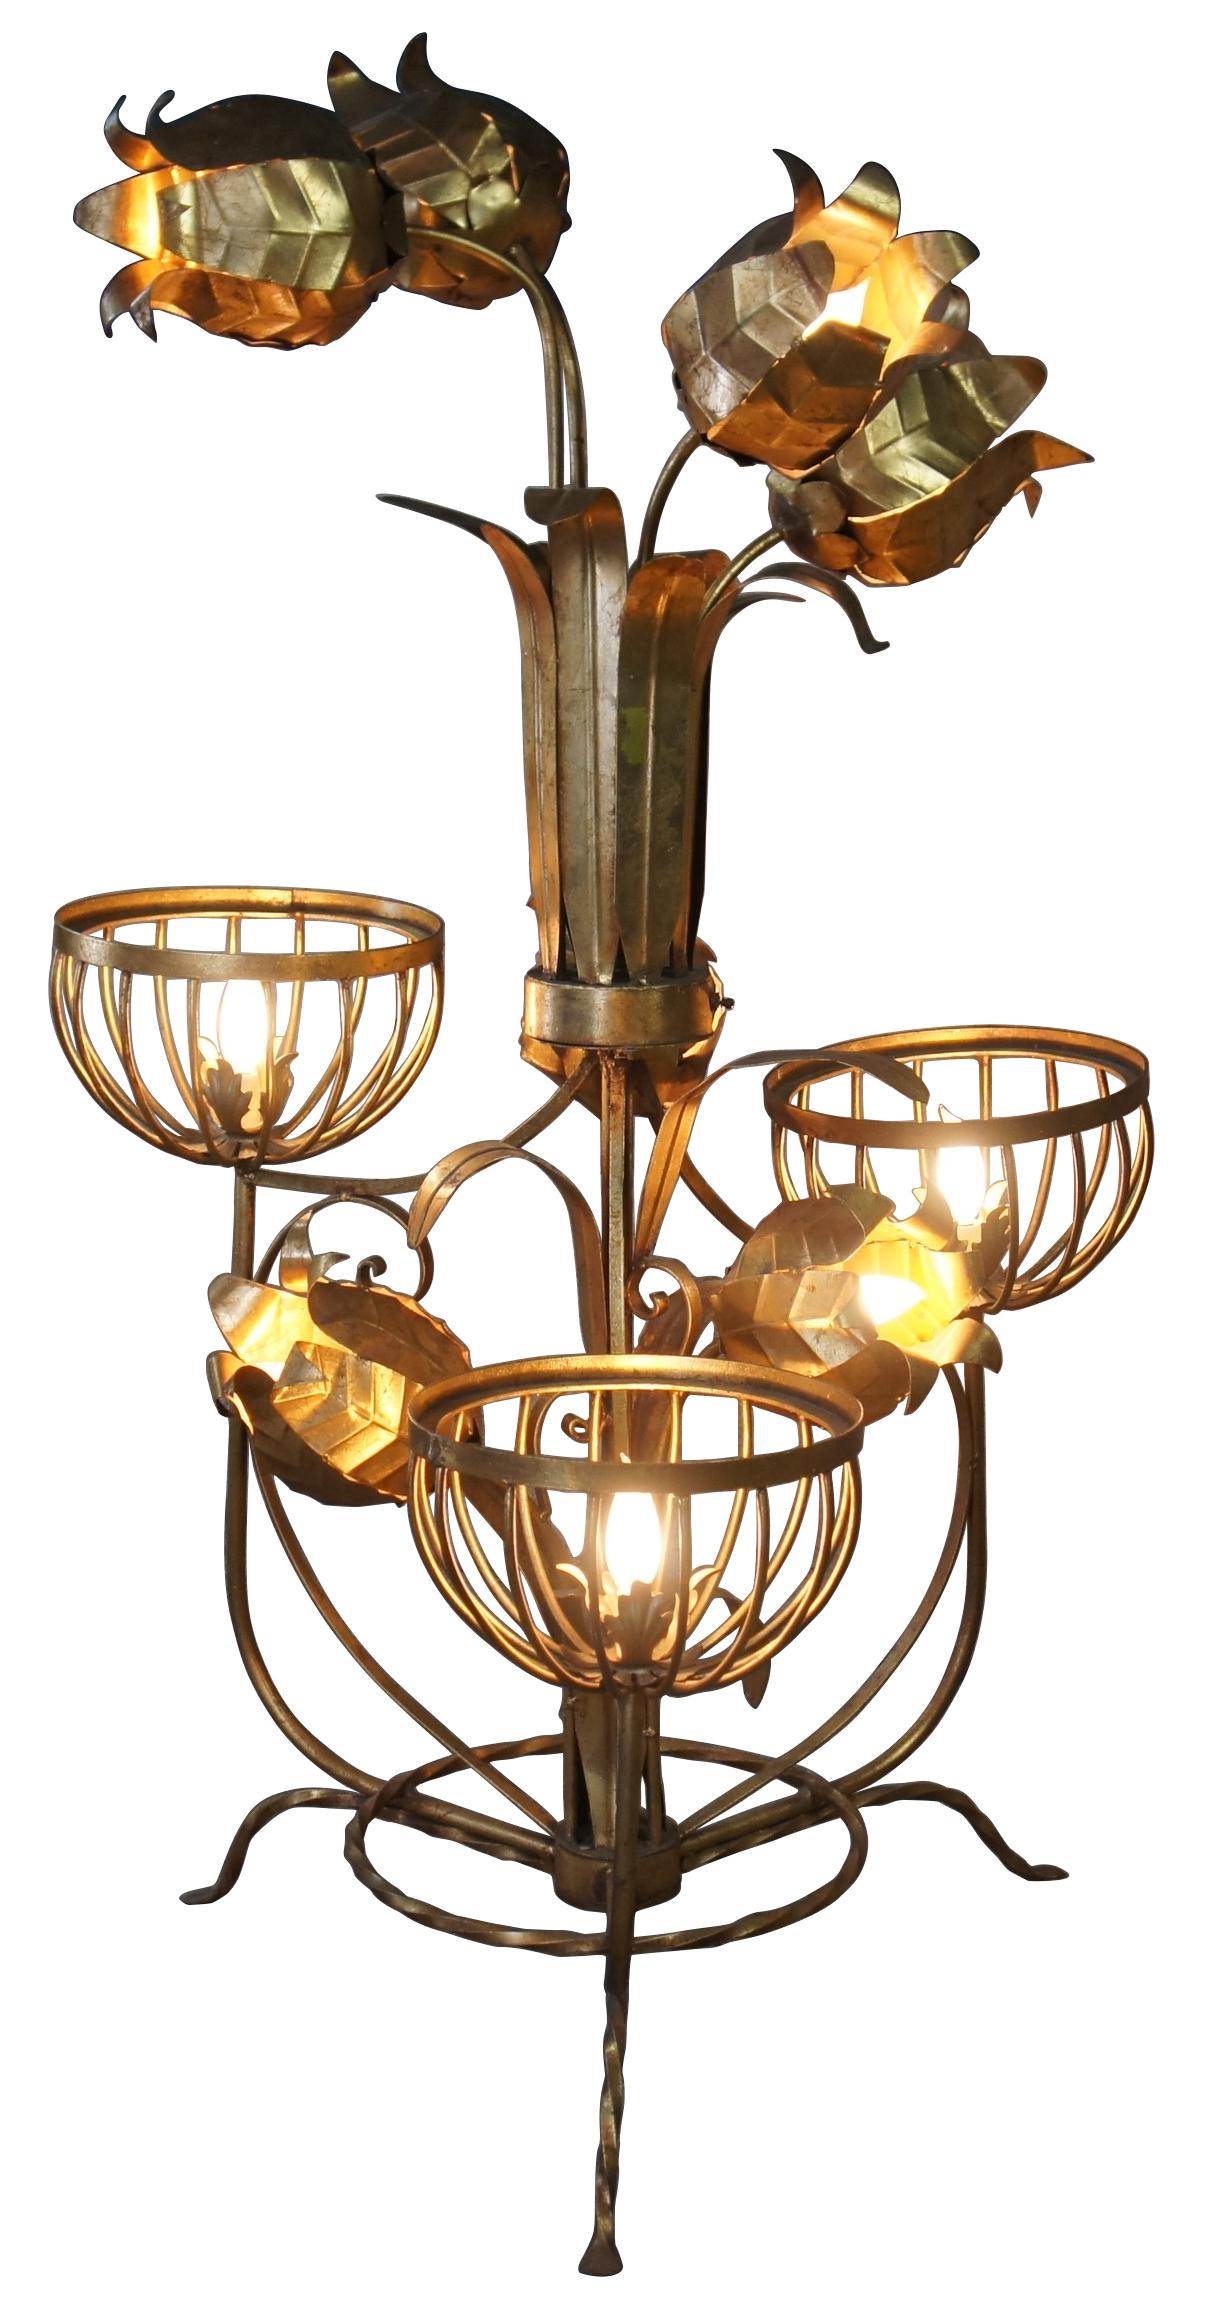 Monumental lampadaire de style Régence. Fabriqué en tôle et en fer forgé, avec des lampes à panier et des fleurs sculpturales sur une base tripode. Comprend 3 réglages de lumière. 

Les globes font 10 